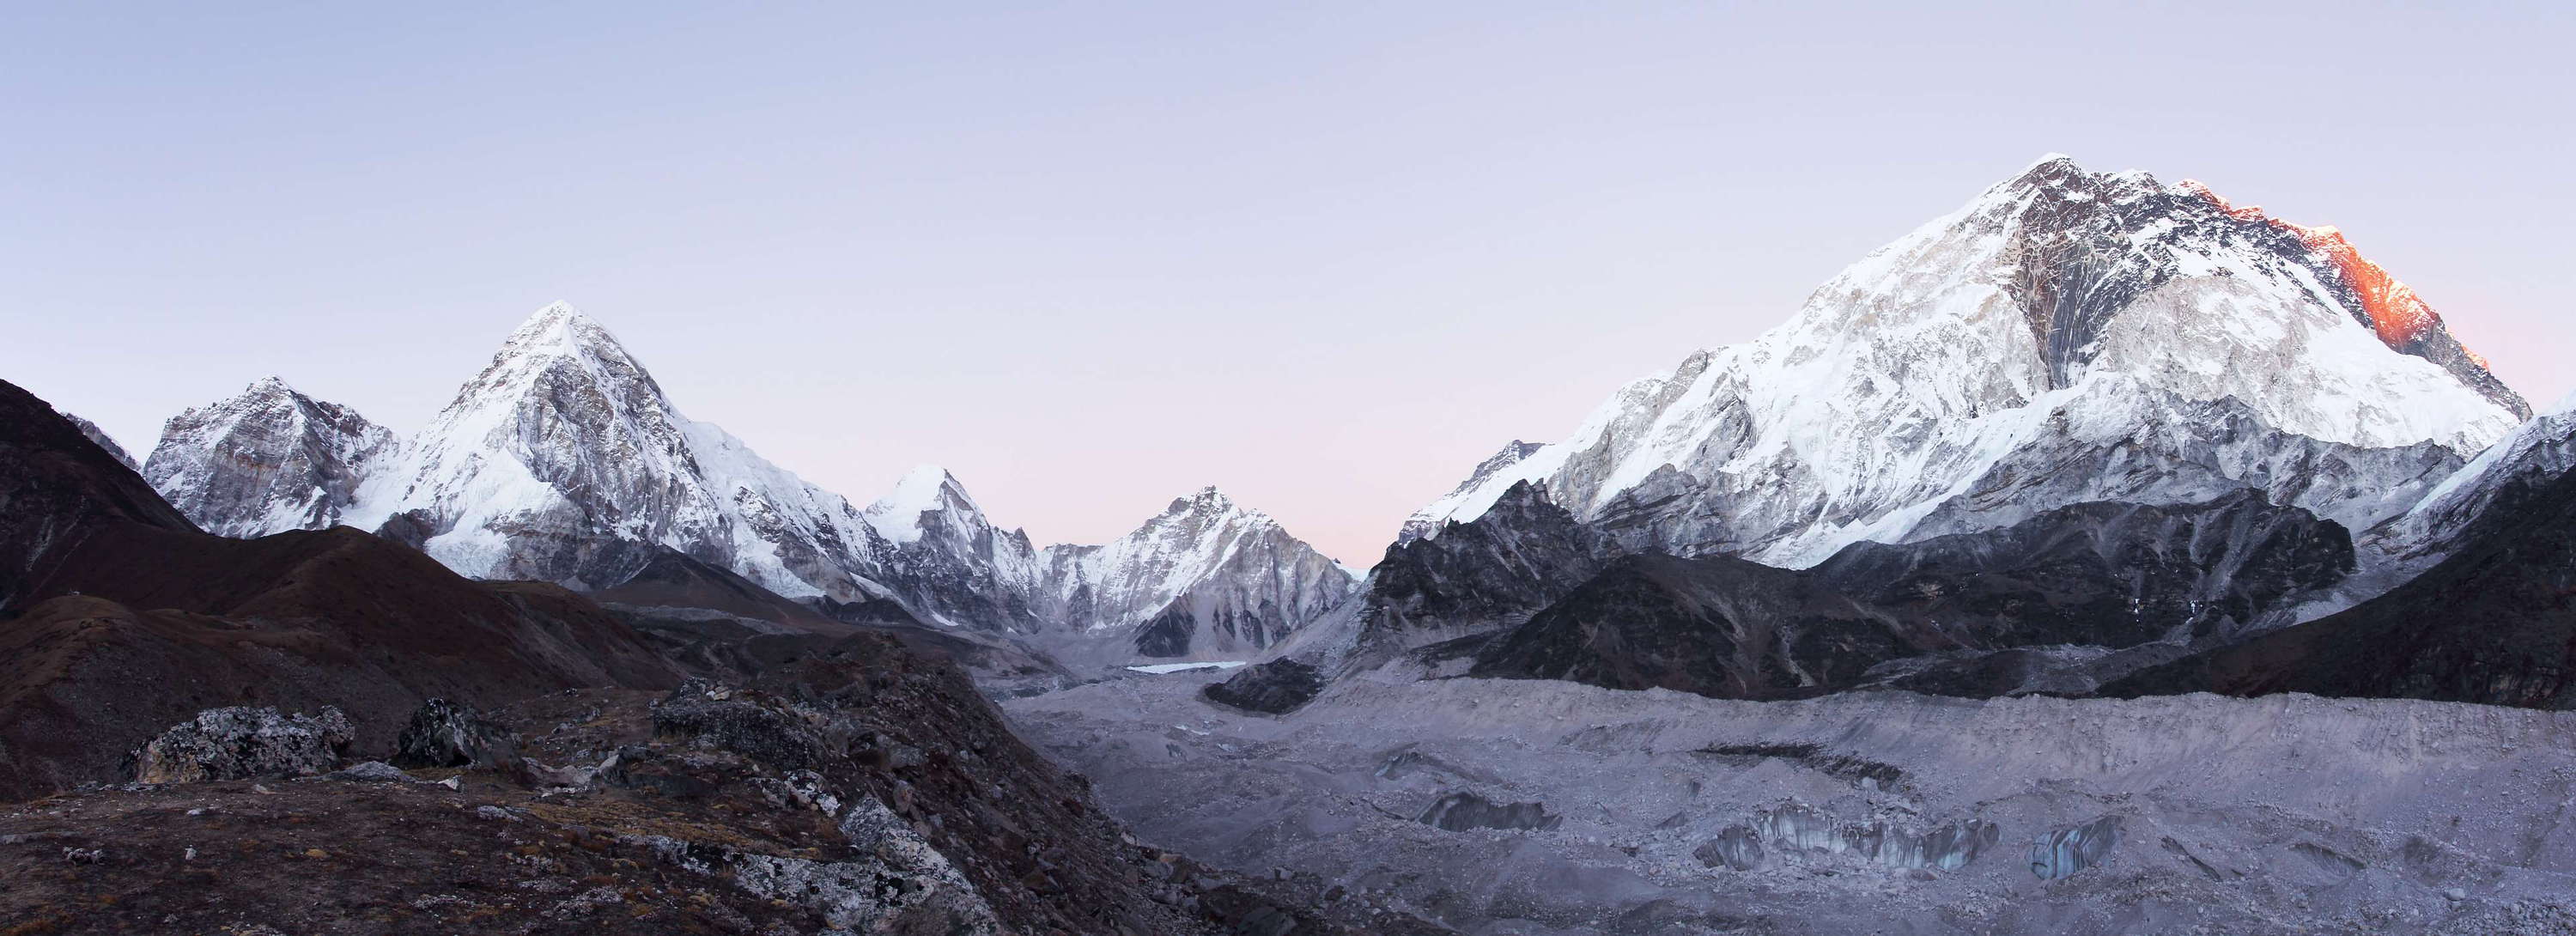 Khumbu Glacier with Pumori and Nuptse